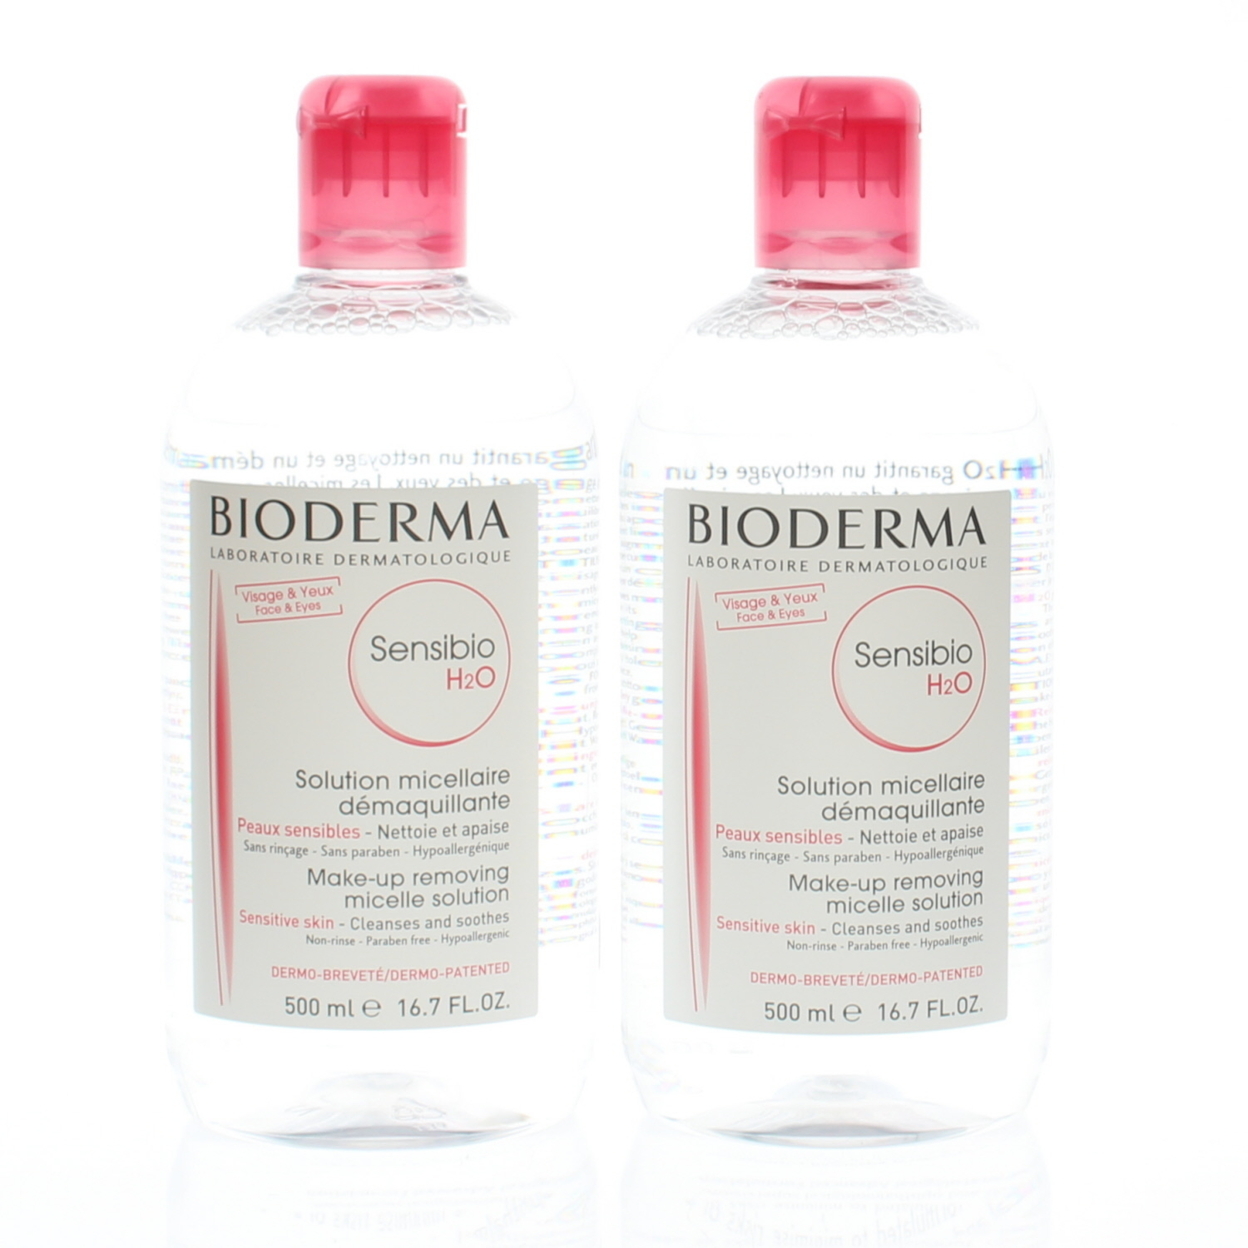 Bioderma Sensibio H2O Solution Micellaire Demaquillante (2 Pack) 500ml Each